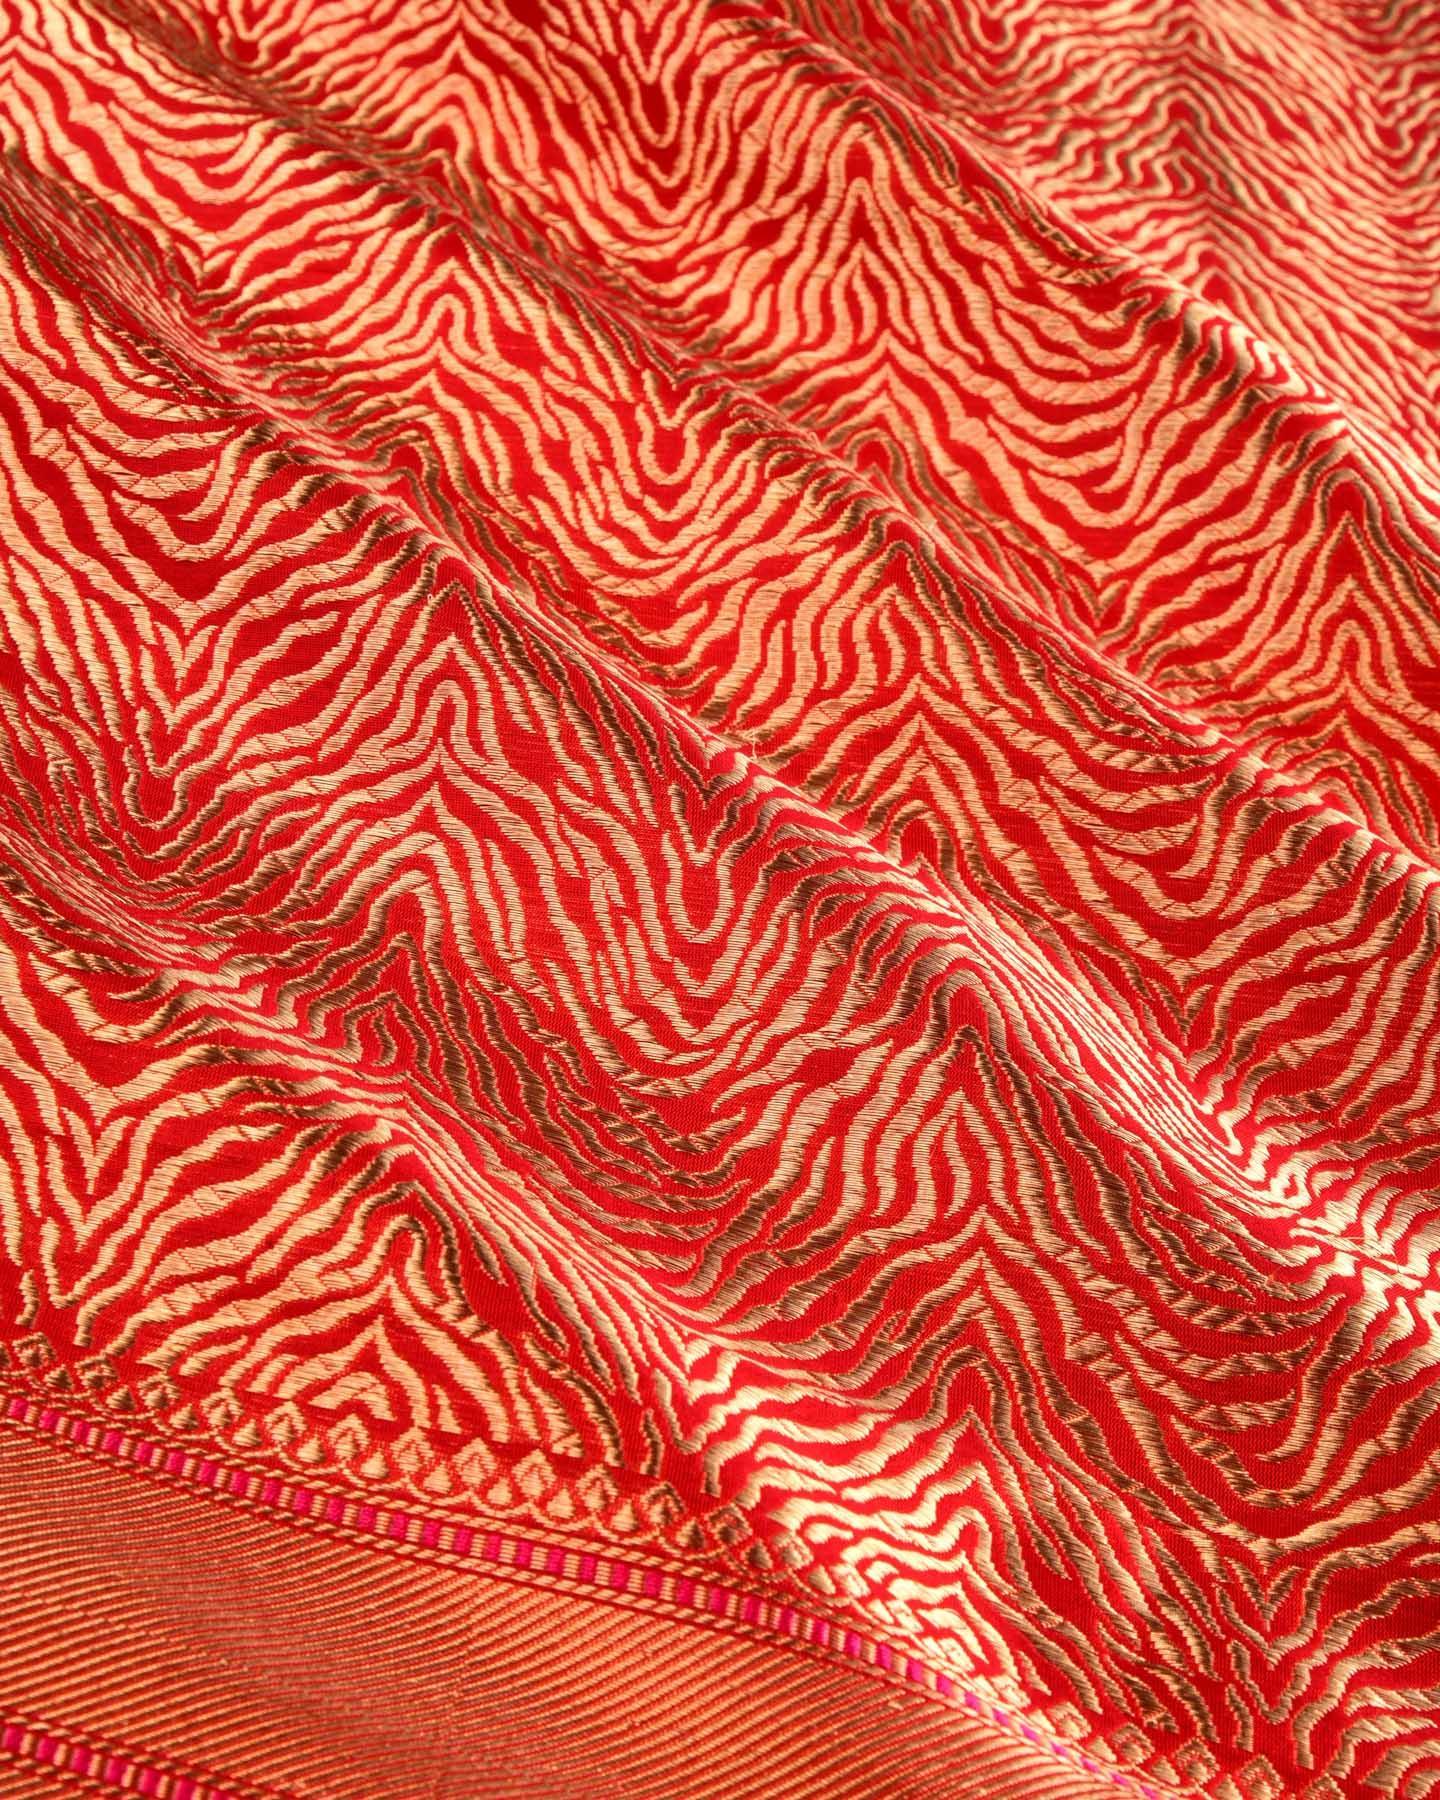 Red Banarasi Tigress Stripes Brocade Handwoven Katan Silk Dupatta - By HolyWeaves, Benares